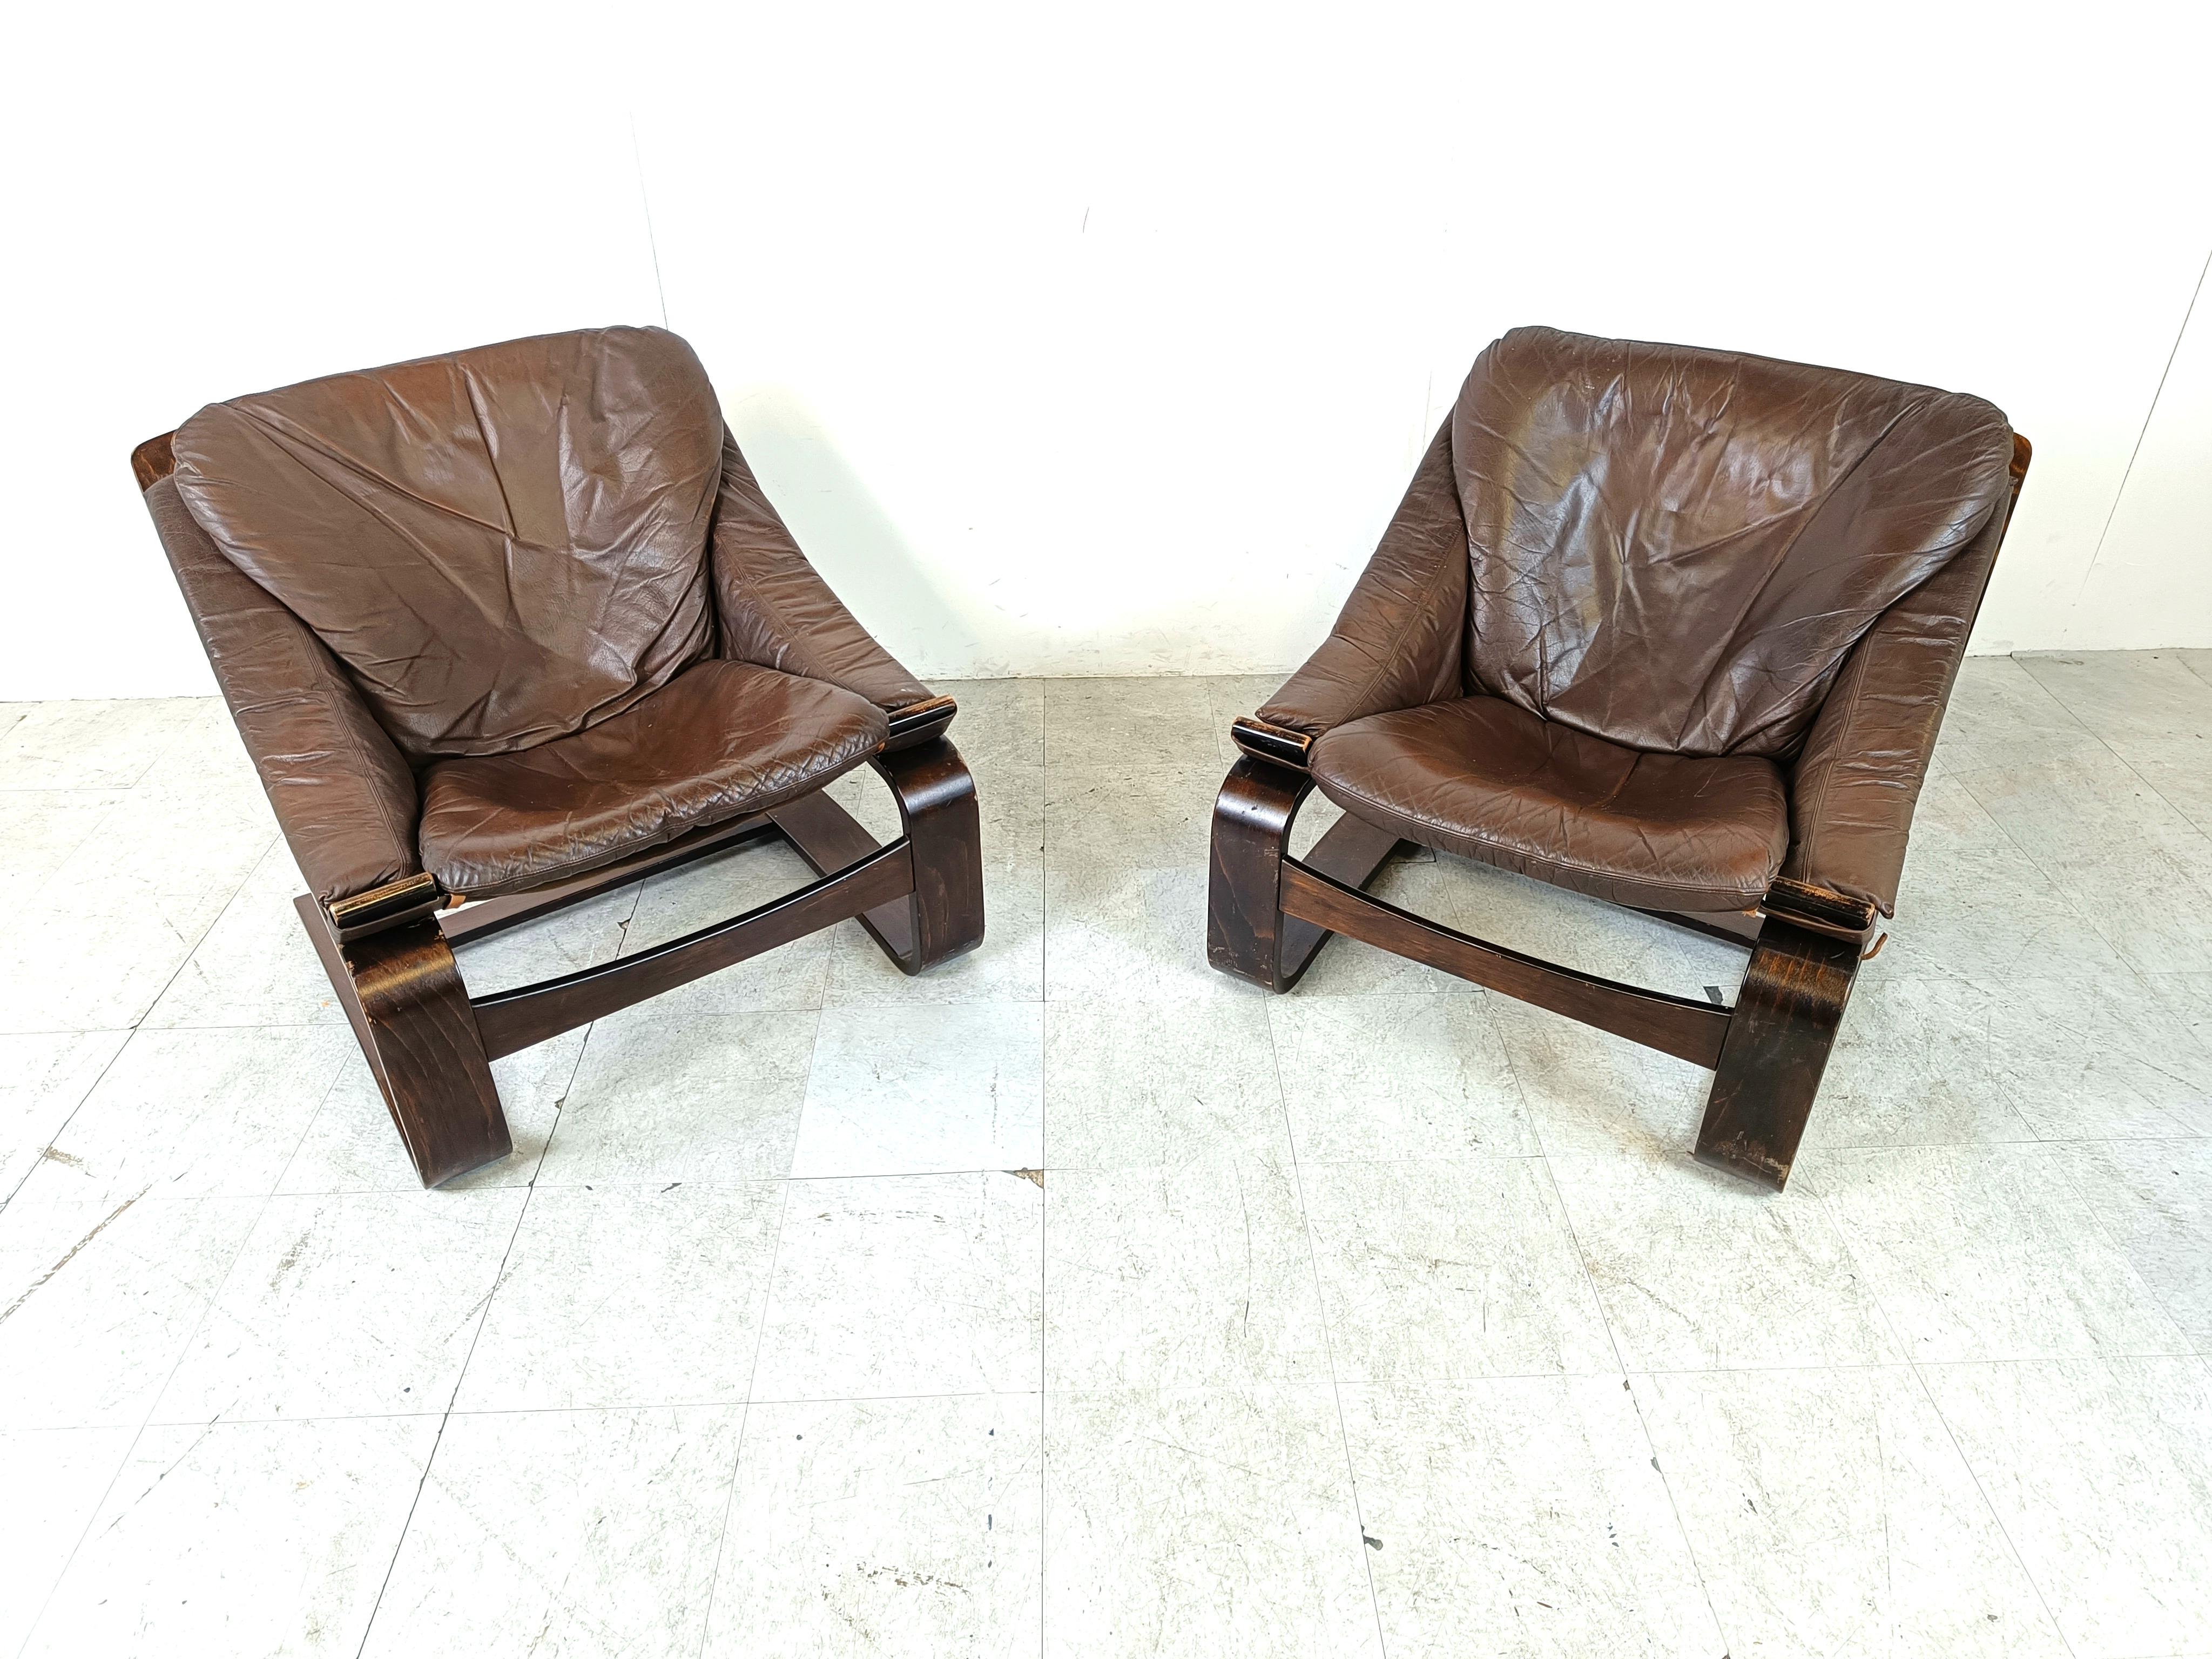 
Paire de fauteuils Kroken conçus par Ake Fribyter pour Nelo Möbel dans les années 1970.

Cadre robuste en hêtre bentwooden avec coussins en cuir épais.

Un design en porte-à-faux original

Années 1970 - Suède

Ils peuvent être démontés pour la